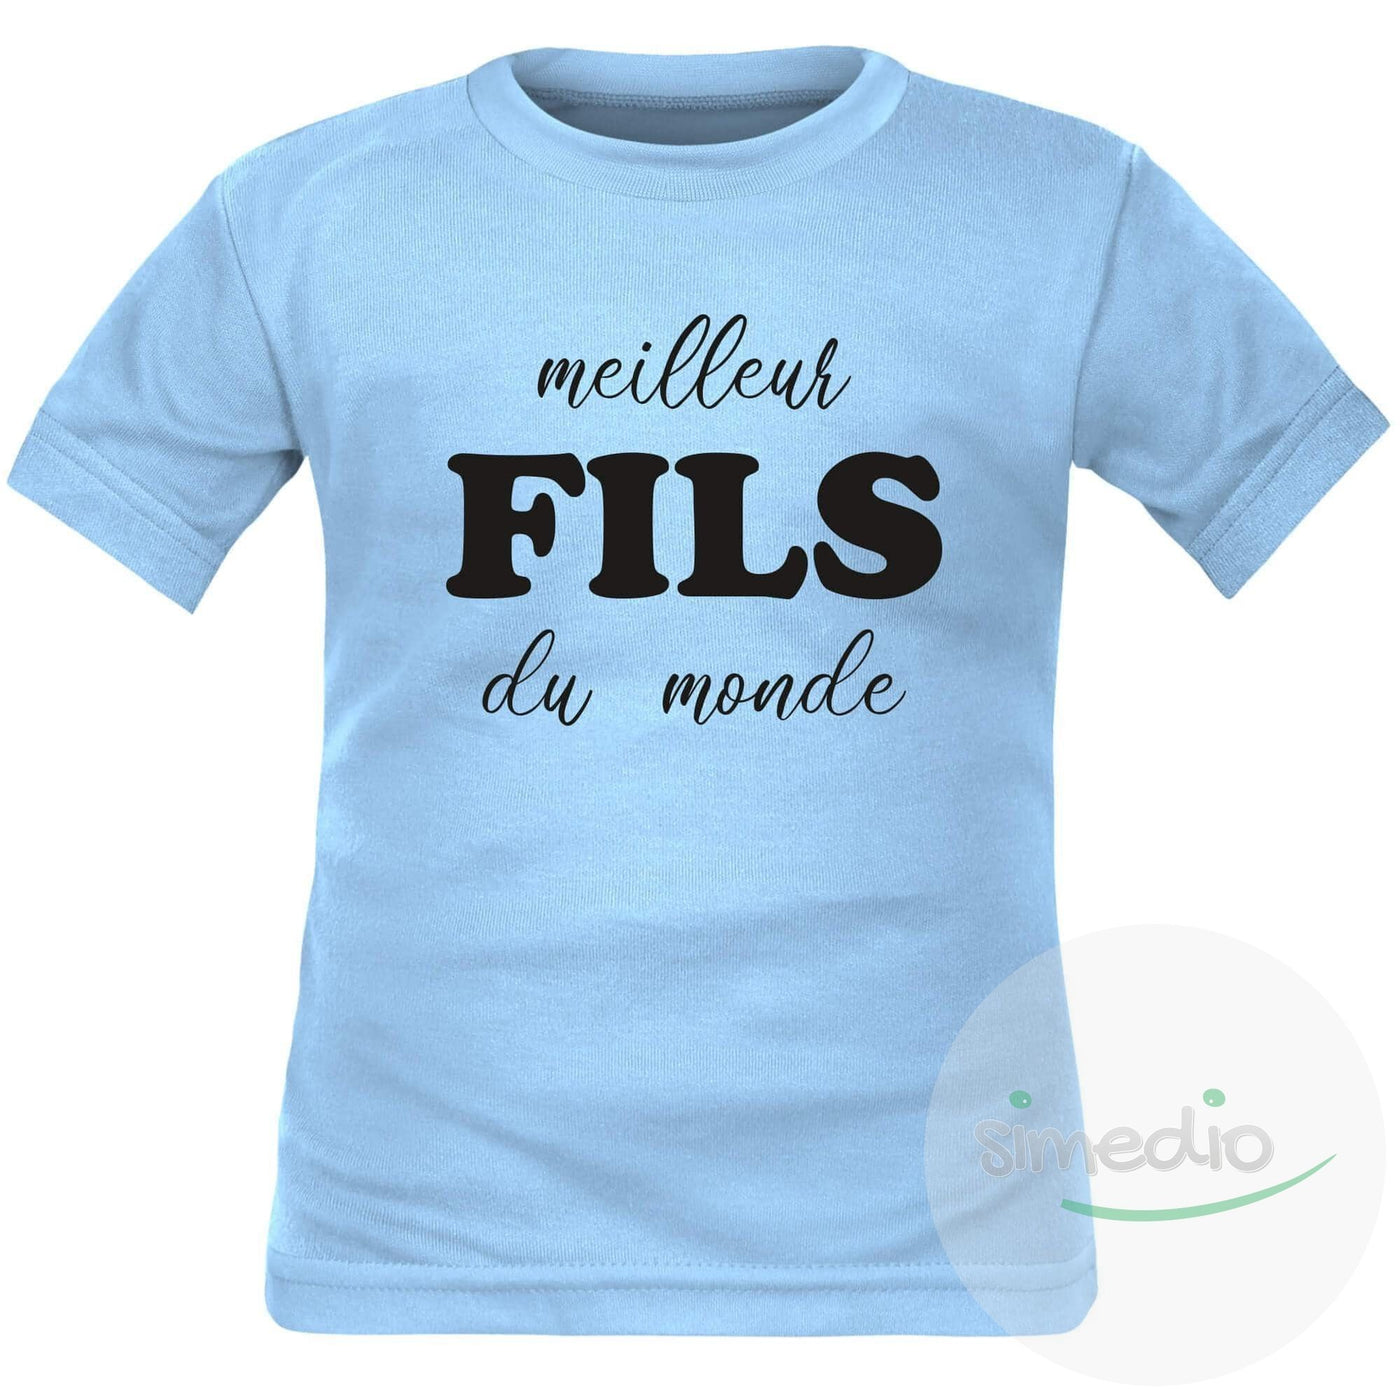 Tee shirt enfant original : meilleur FILS du monde, Bleu, 2 ans, Courtes - SiMEDIO